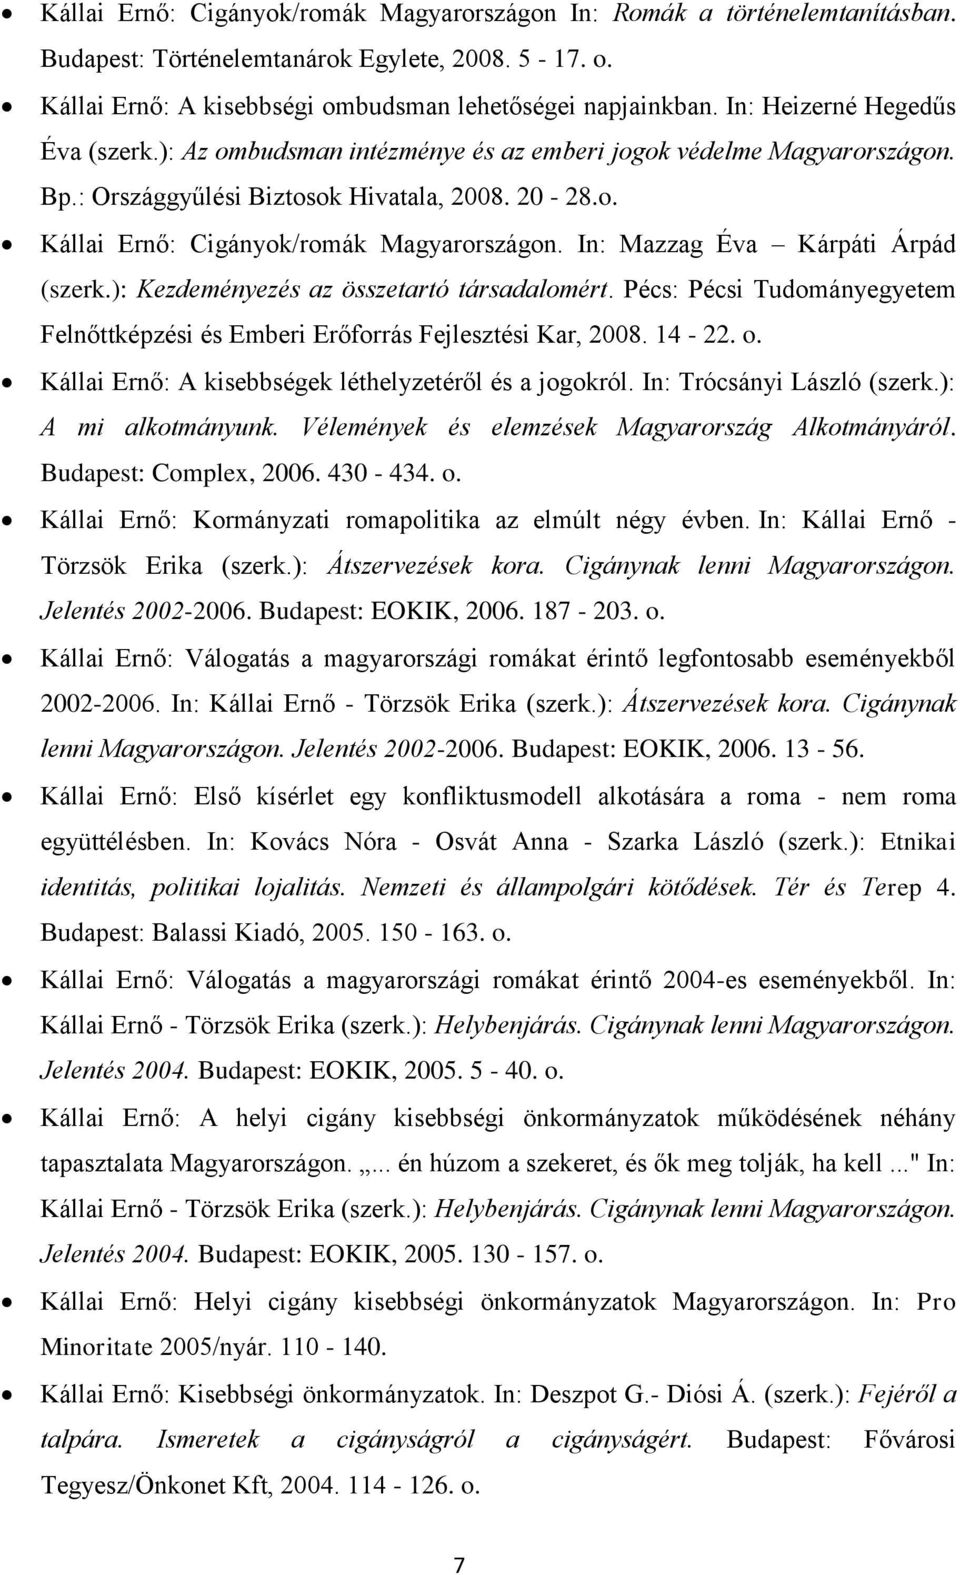 In: Mazzag Éva Kárpáti Árpád (szerk.): Kezdeményezés az összetartó társadalomért. Pécs: Pécsi Tudományegyetem Felnőttképzési és Emberi Erőforrás Fejlesztési Kar, 2008. 14-22. o.